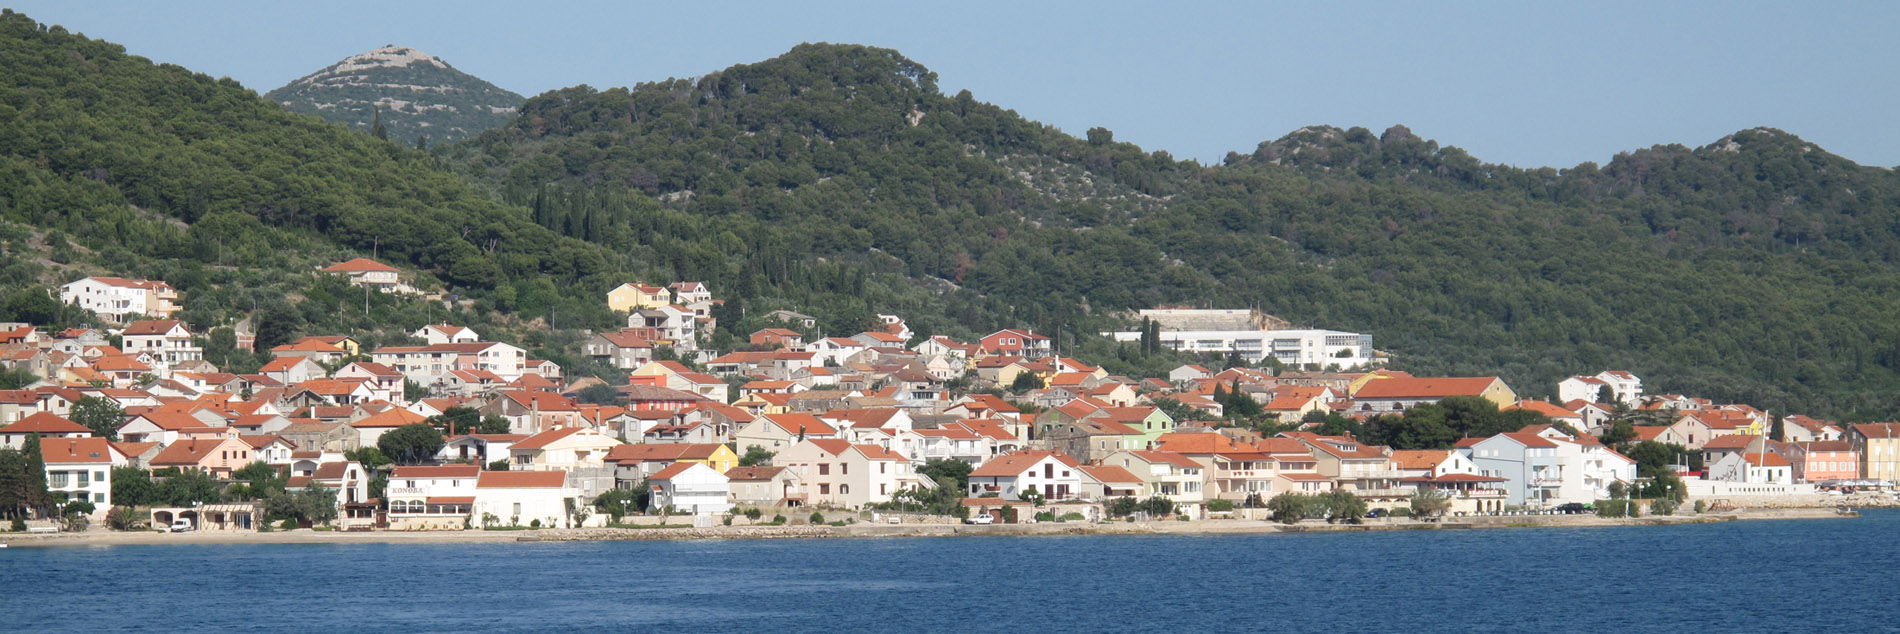 Preko - Zadar, Croatia